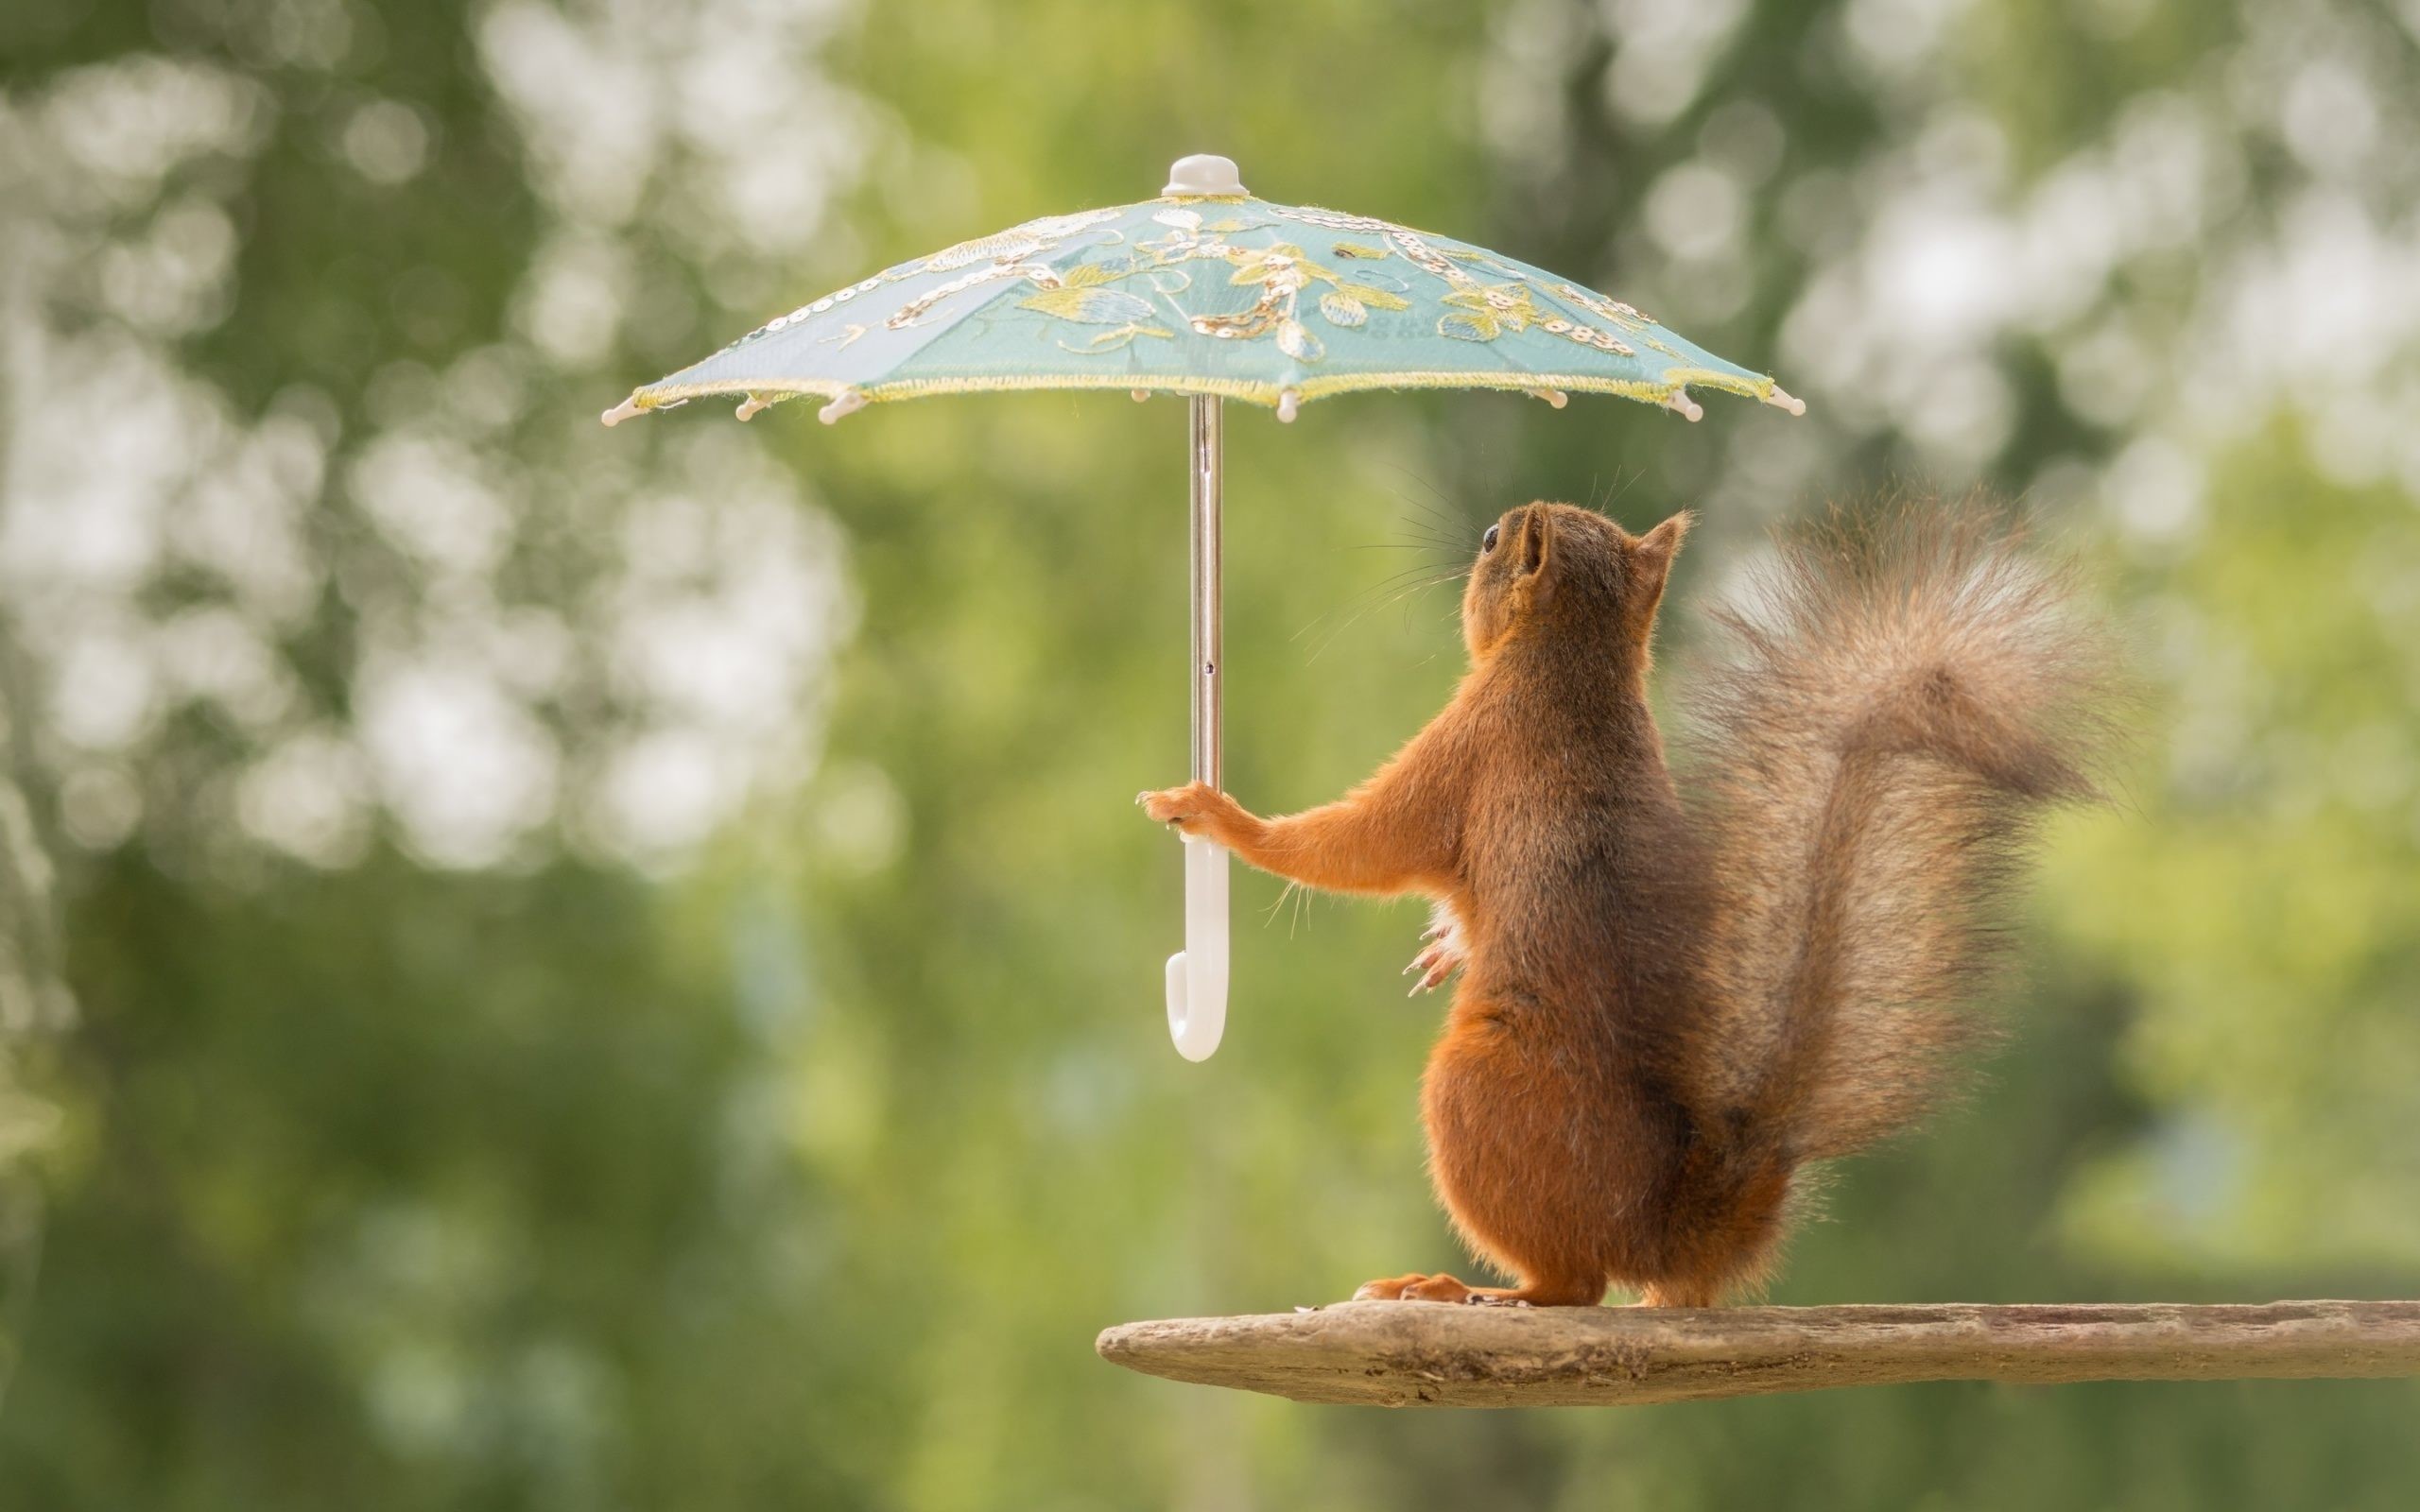 دانلود والپیپر بسیار زیبا و کیوت از سنجاب زیبا زیر بارون با چتر کوچولو